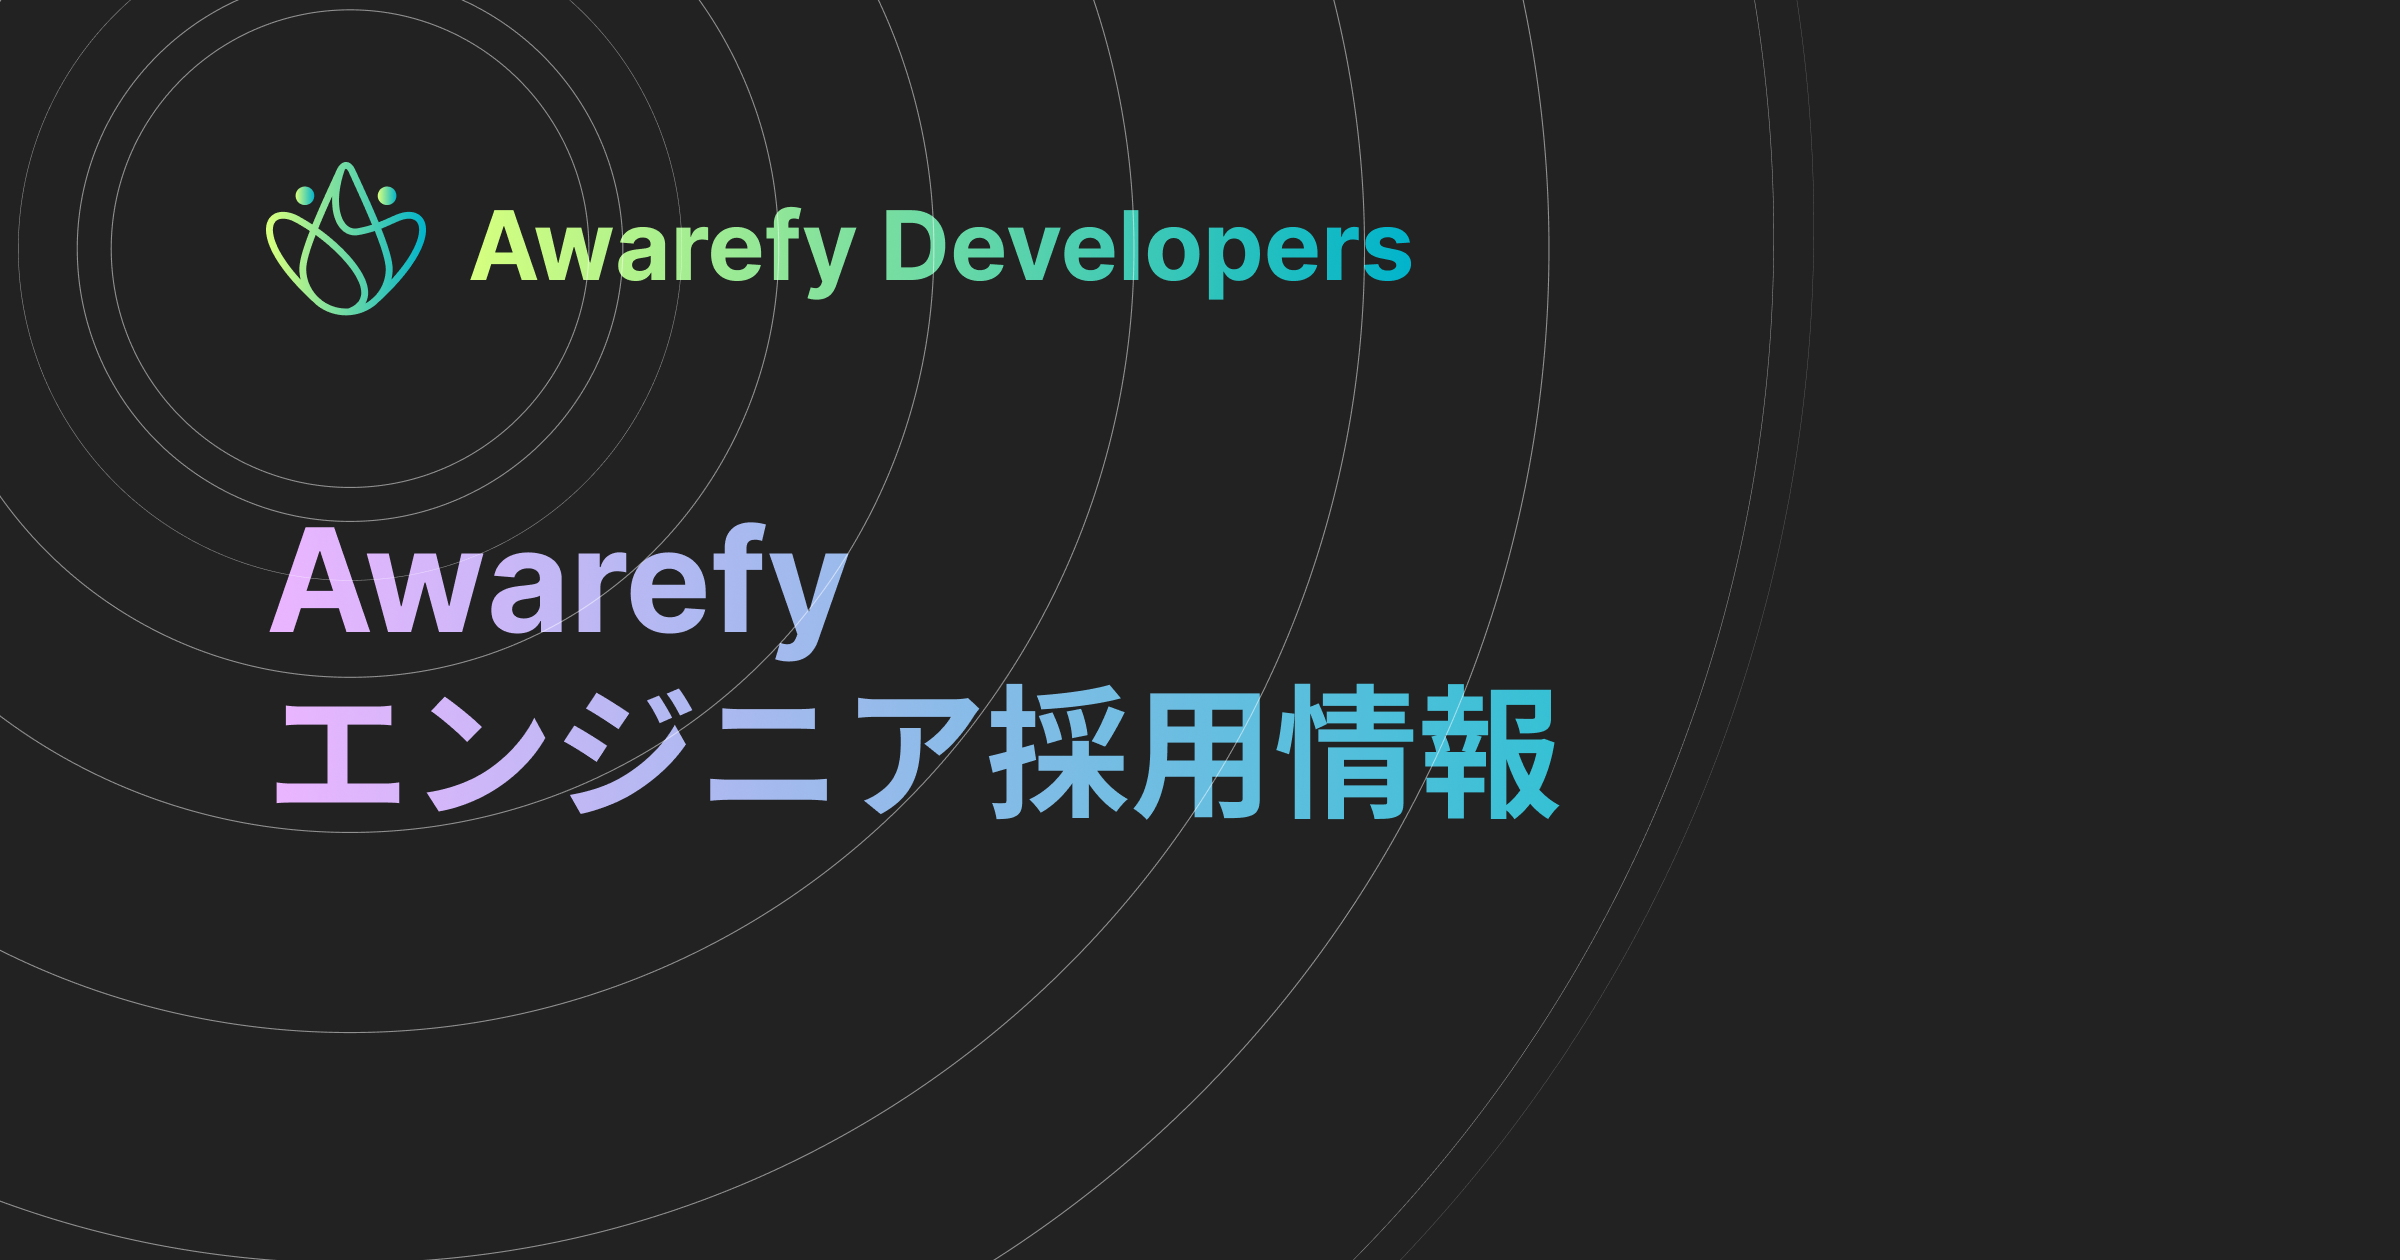 AWS Dev Day Japan 2022 にて、『[Amazon EKS on AWS Fargate] スタートアップの "次の3年" を支えるためのインフラ技術』 を発表してきました。